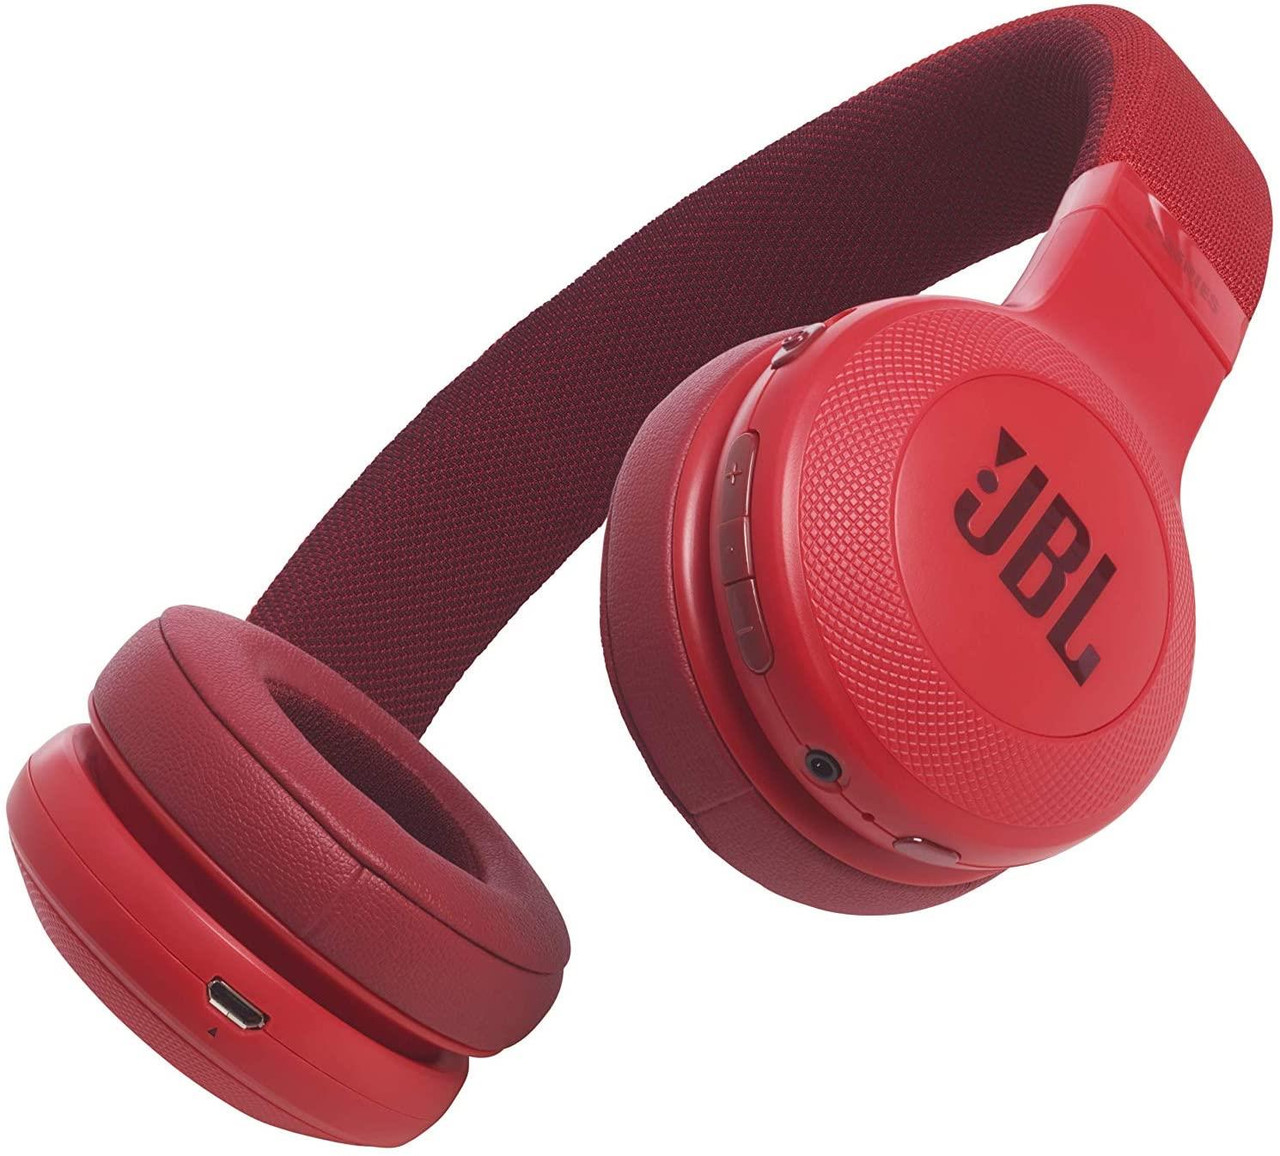 Купить наушники в м видео. Наушники JBL e45bt. JBL e45bt Red. Беспроводные Bluetooth-наушники JBL e45bt. Наушники JBL e45 BT Red.